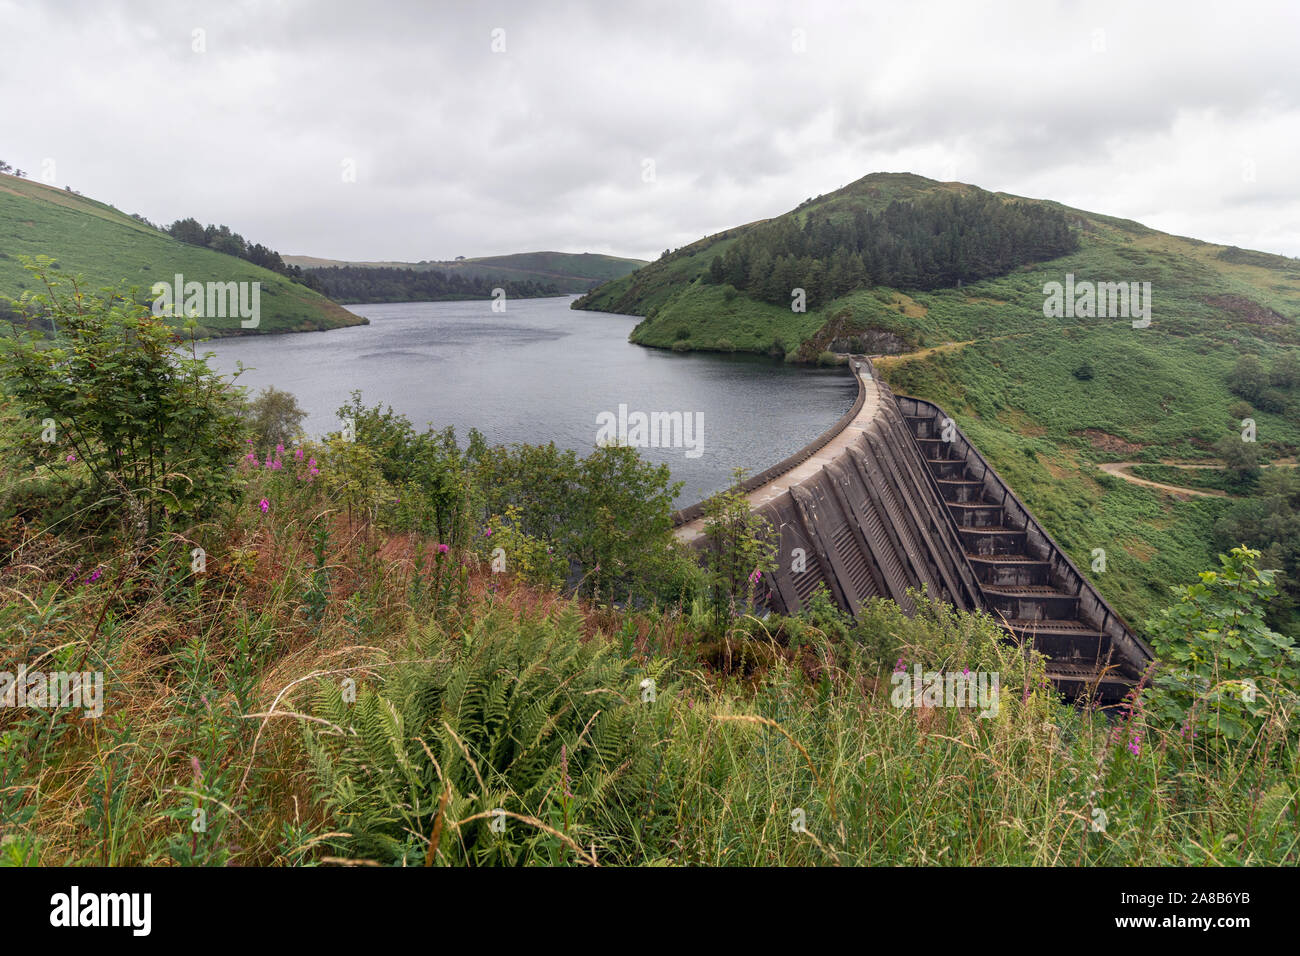 Llyn Clywedog Dam in Powys, mid Wales Stock Photo